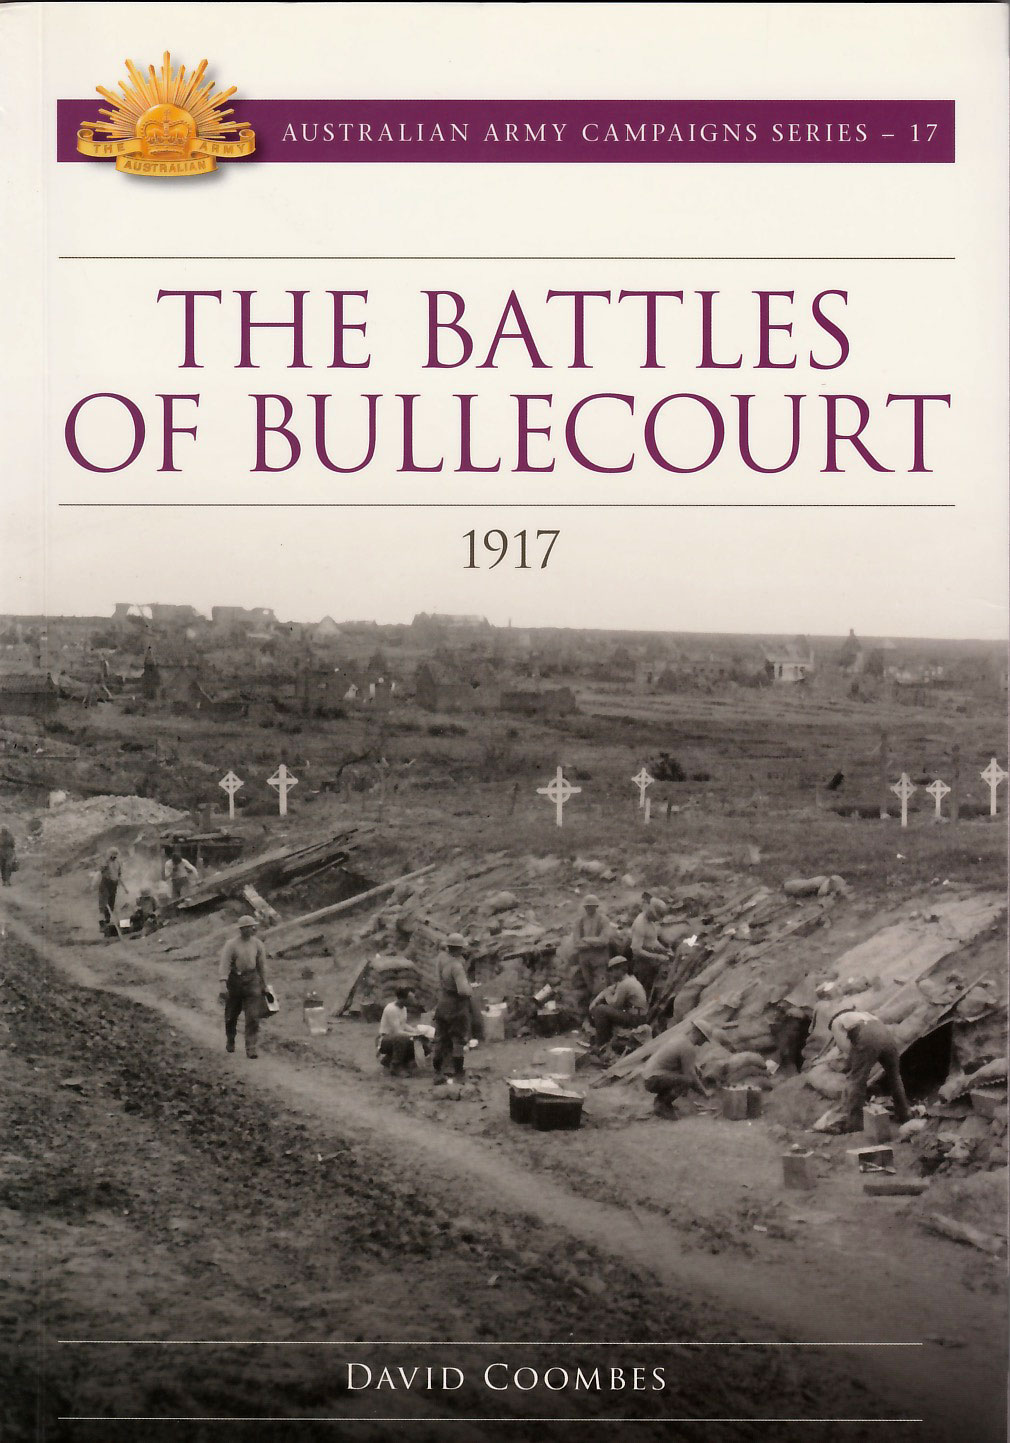 The Battles of Bullecourt